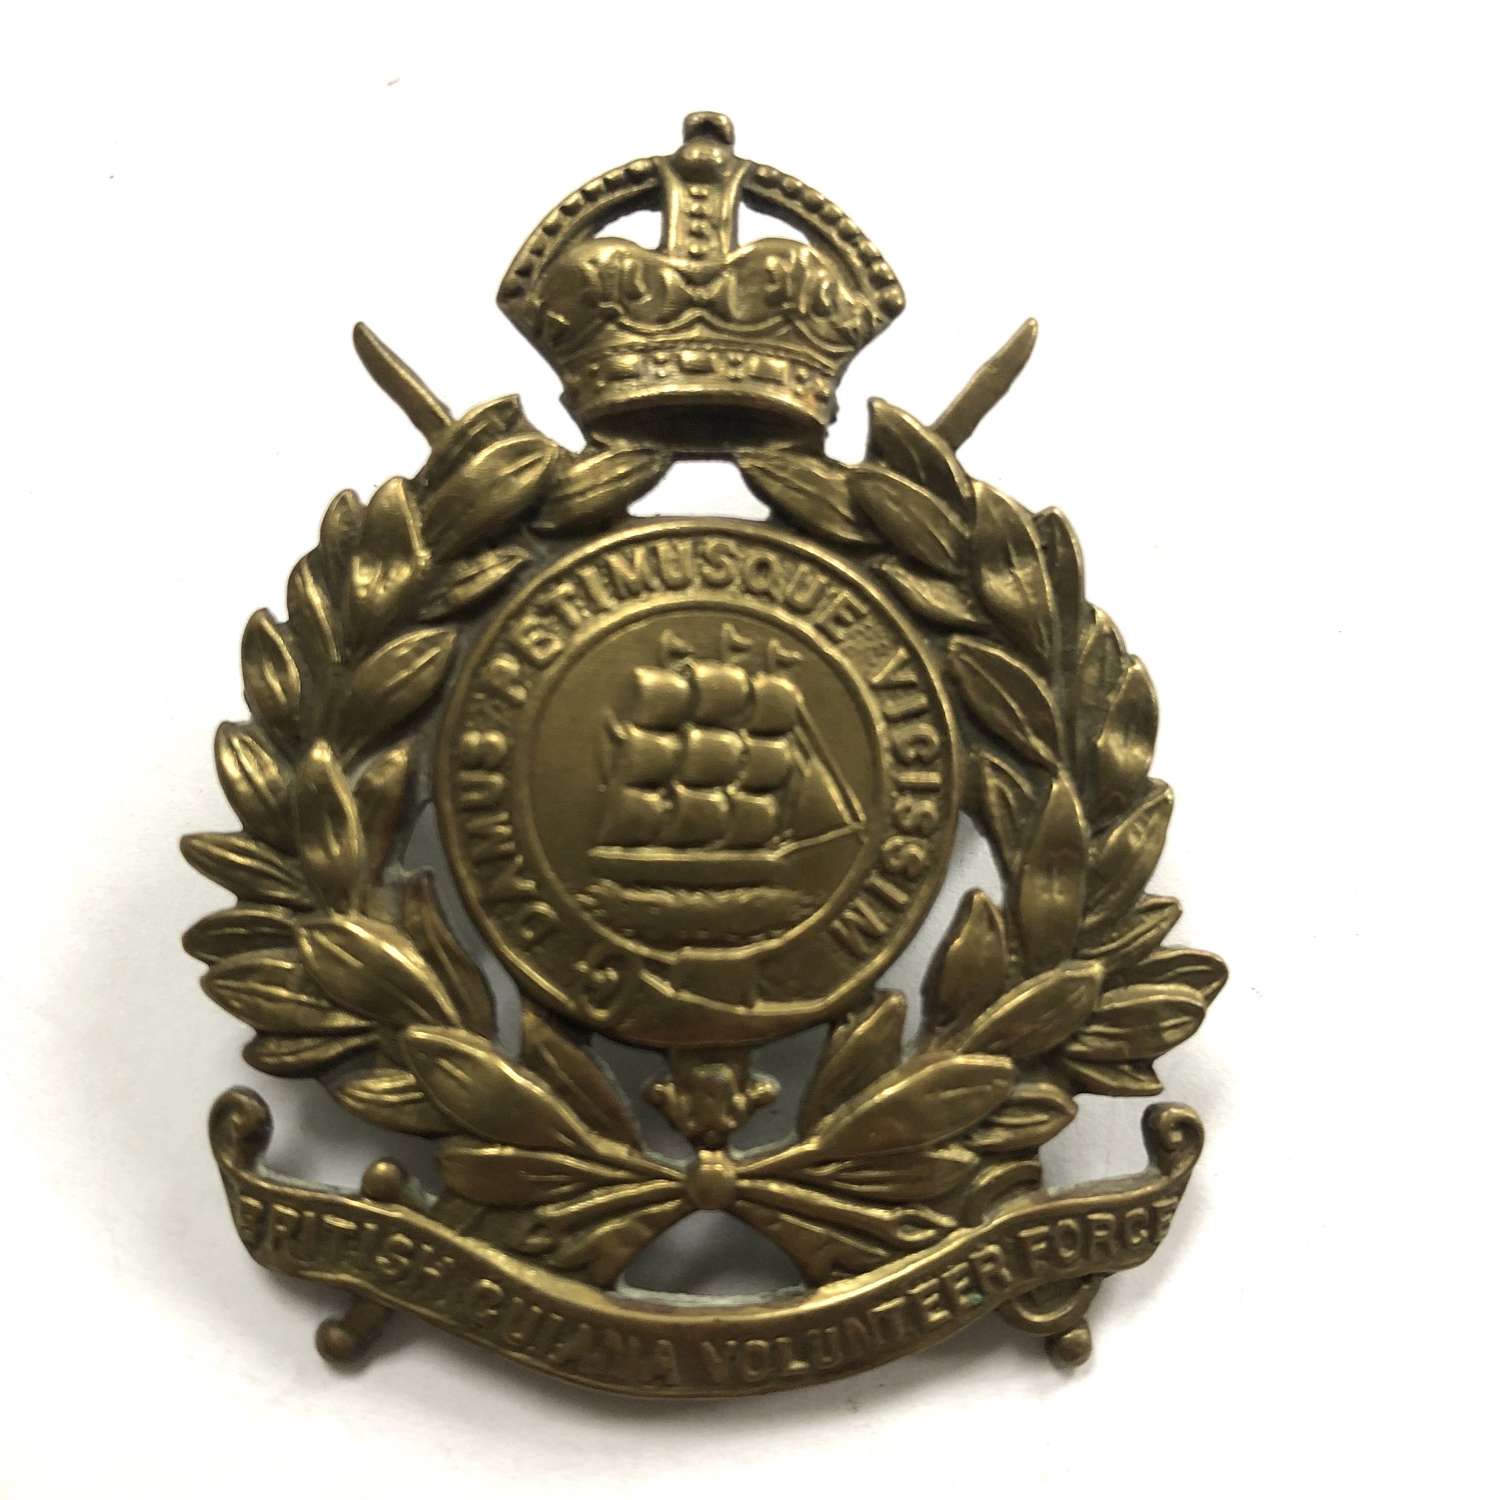 British Guiana Volunteer Force cap badge